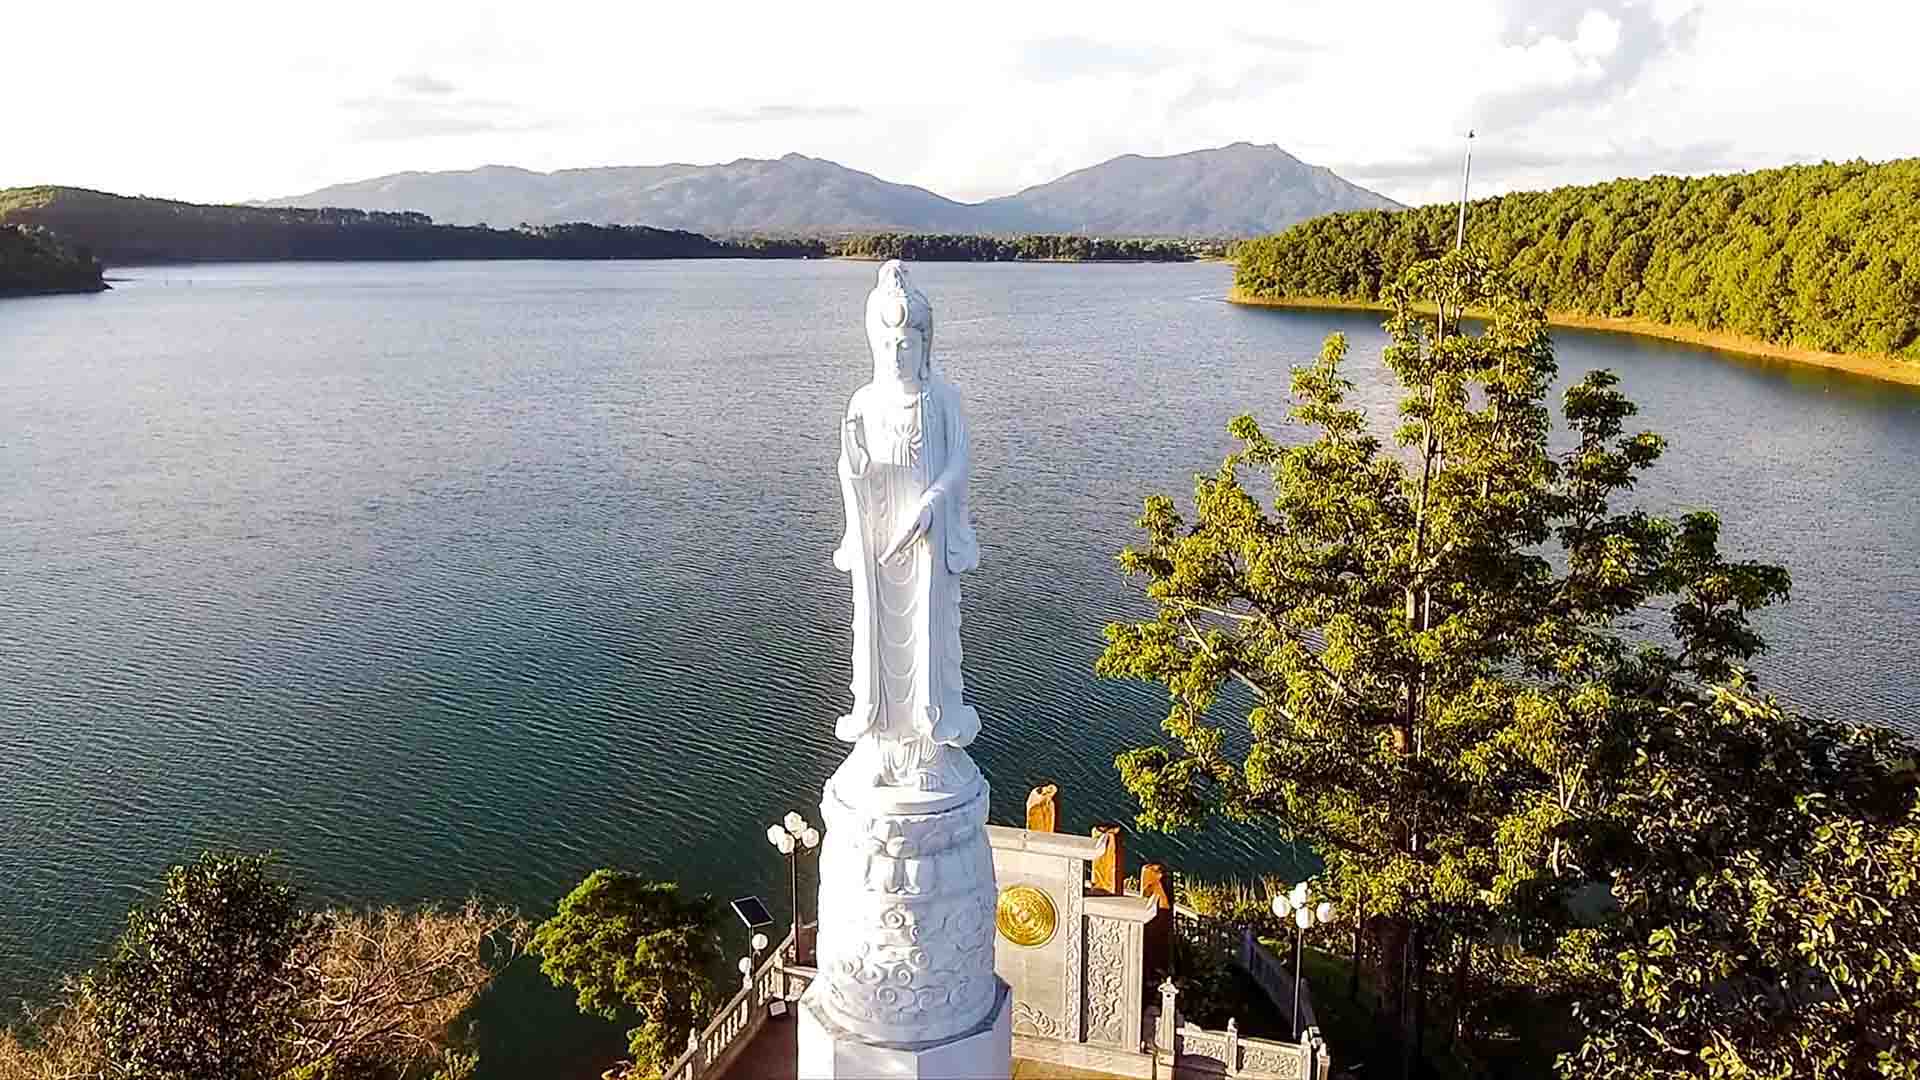 Cảnh đẹp biển hồ Pleiku tại Gia Lai nhìn trên cao Flycam - Tượng Phật biển Hồ Pleiku 